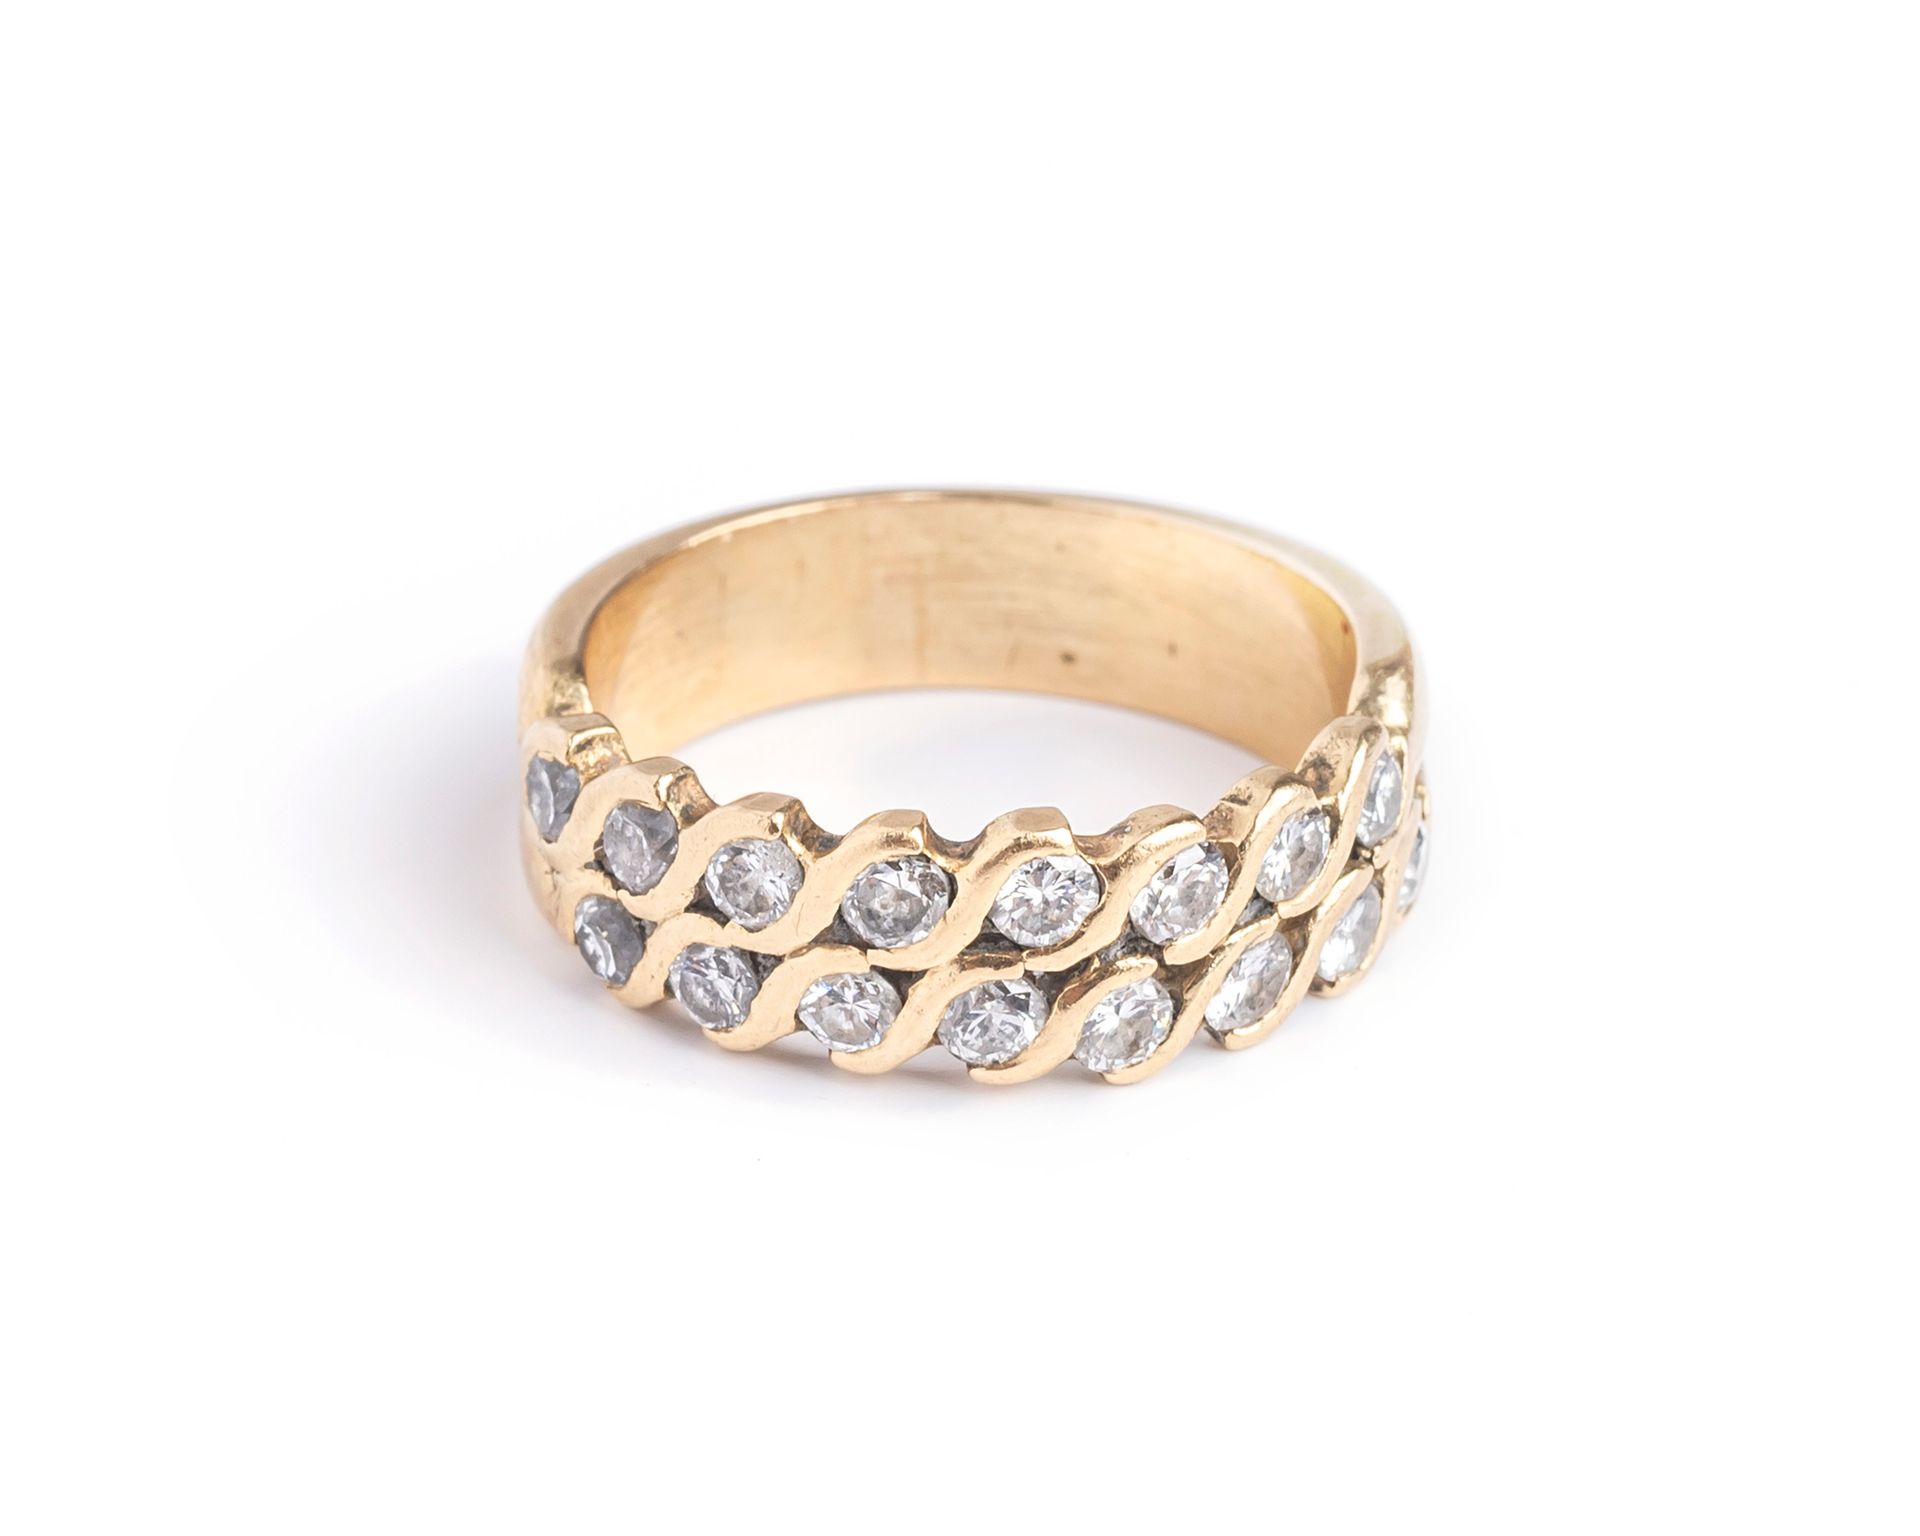 Null 18K（750千分之一）黄金半婚戒，镶嵌两行圆形明亮式切割钻石
手指尺寸：50
毛重 : 5.4克